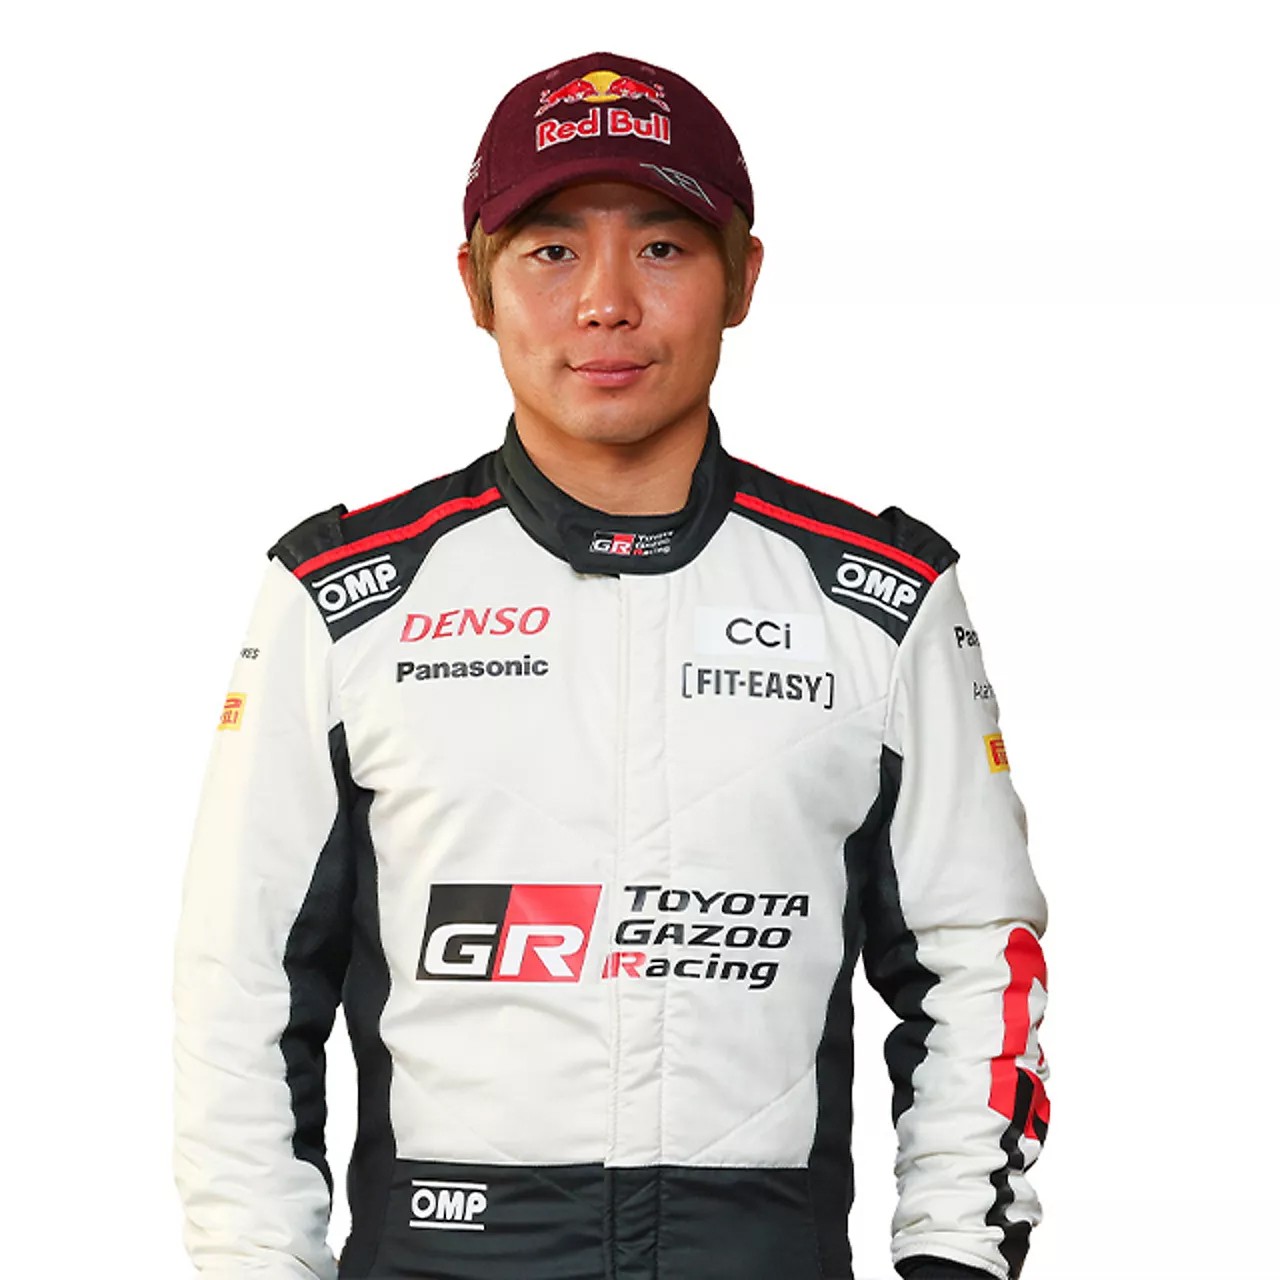 Portrait of driver, Takamoto Katsuta